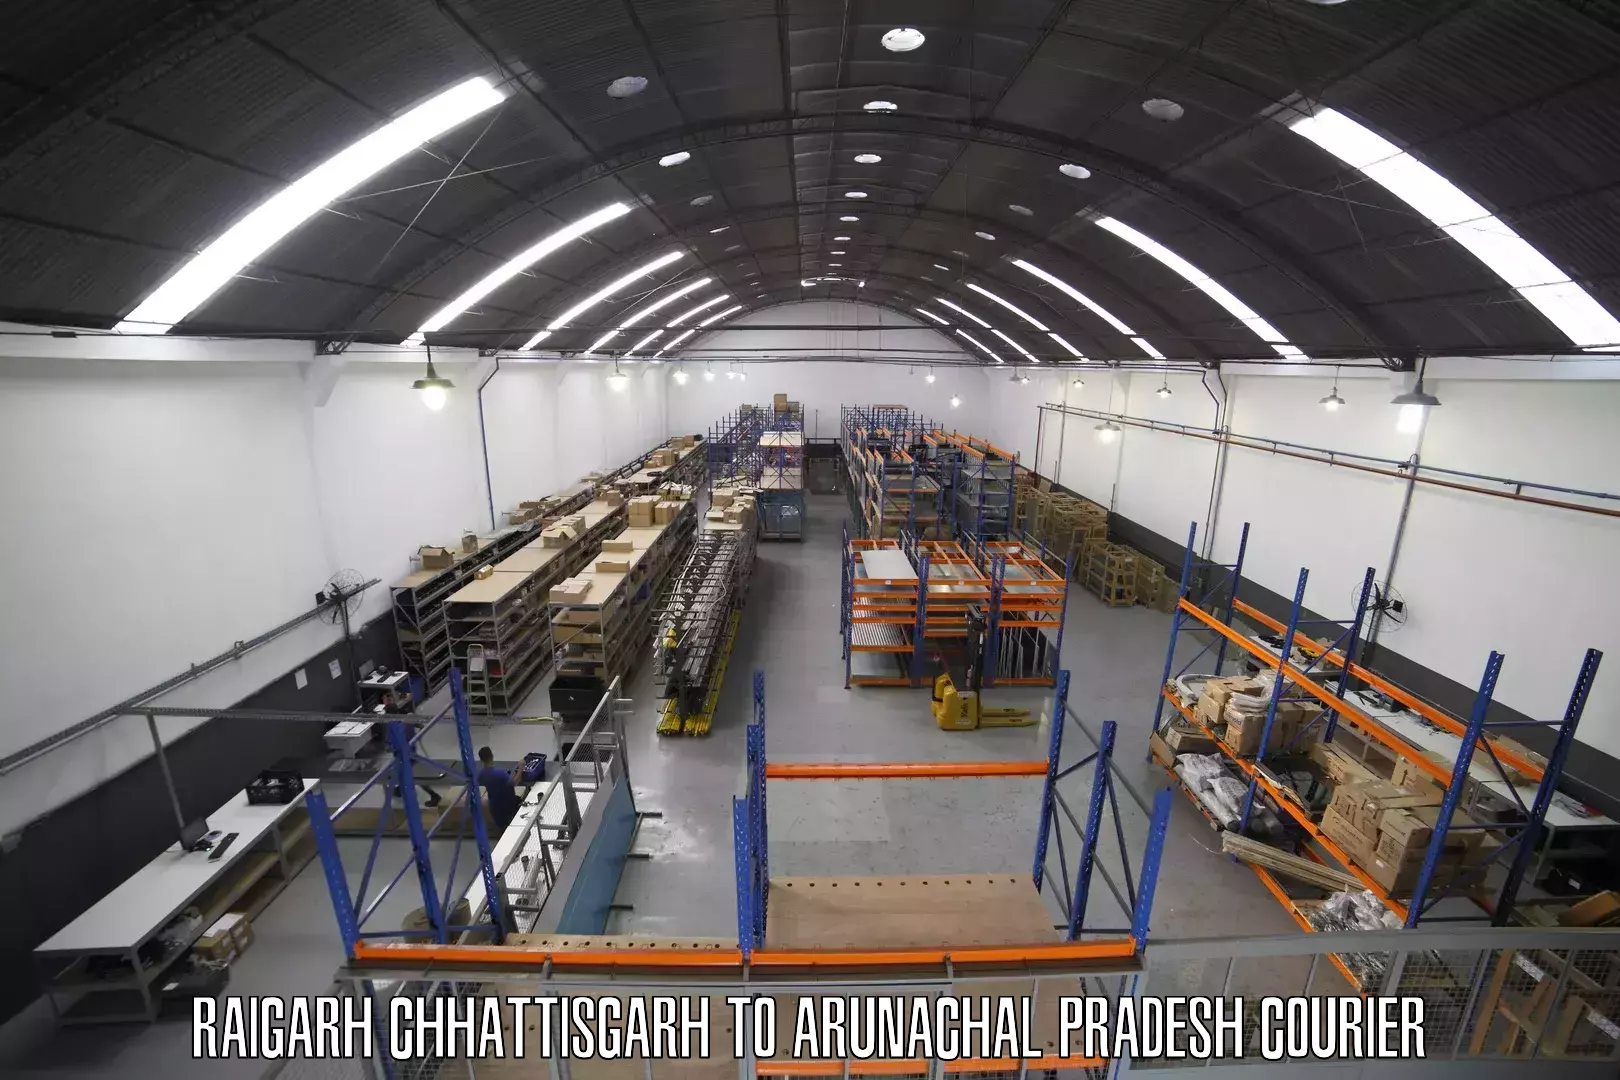 Global logistics network Raigarh Chhattisgarh to Kurung Kumey